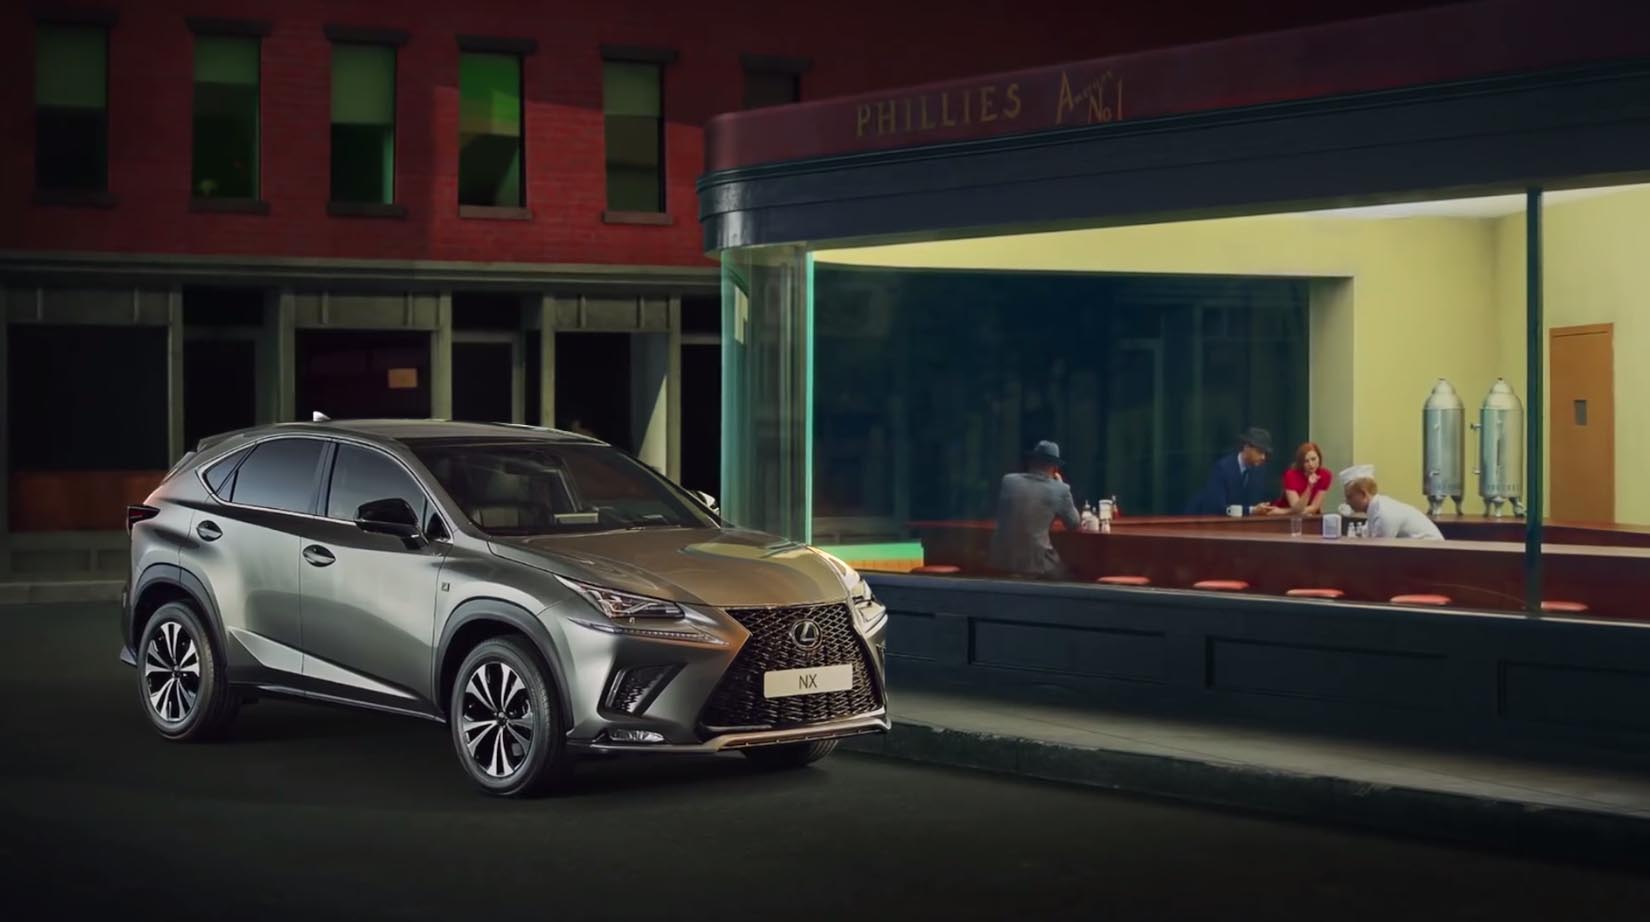 Il dipinto di Hopper e la Lexus Hybrid